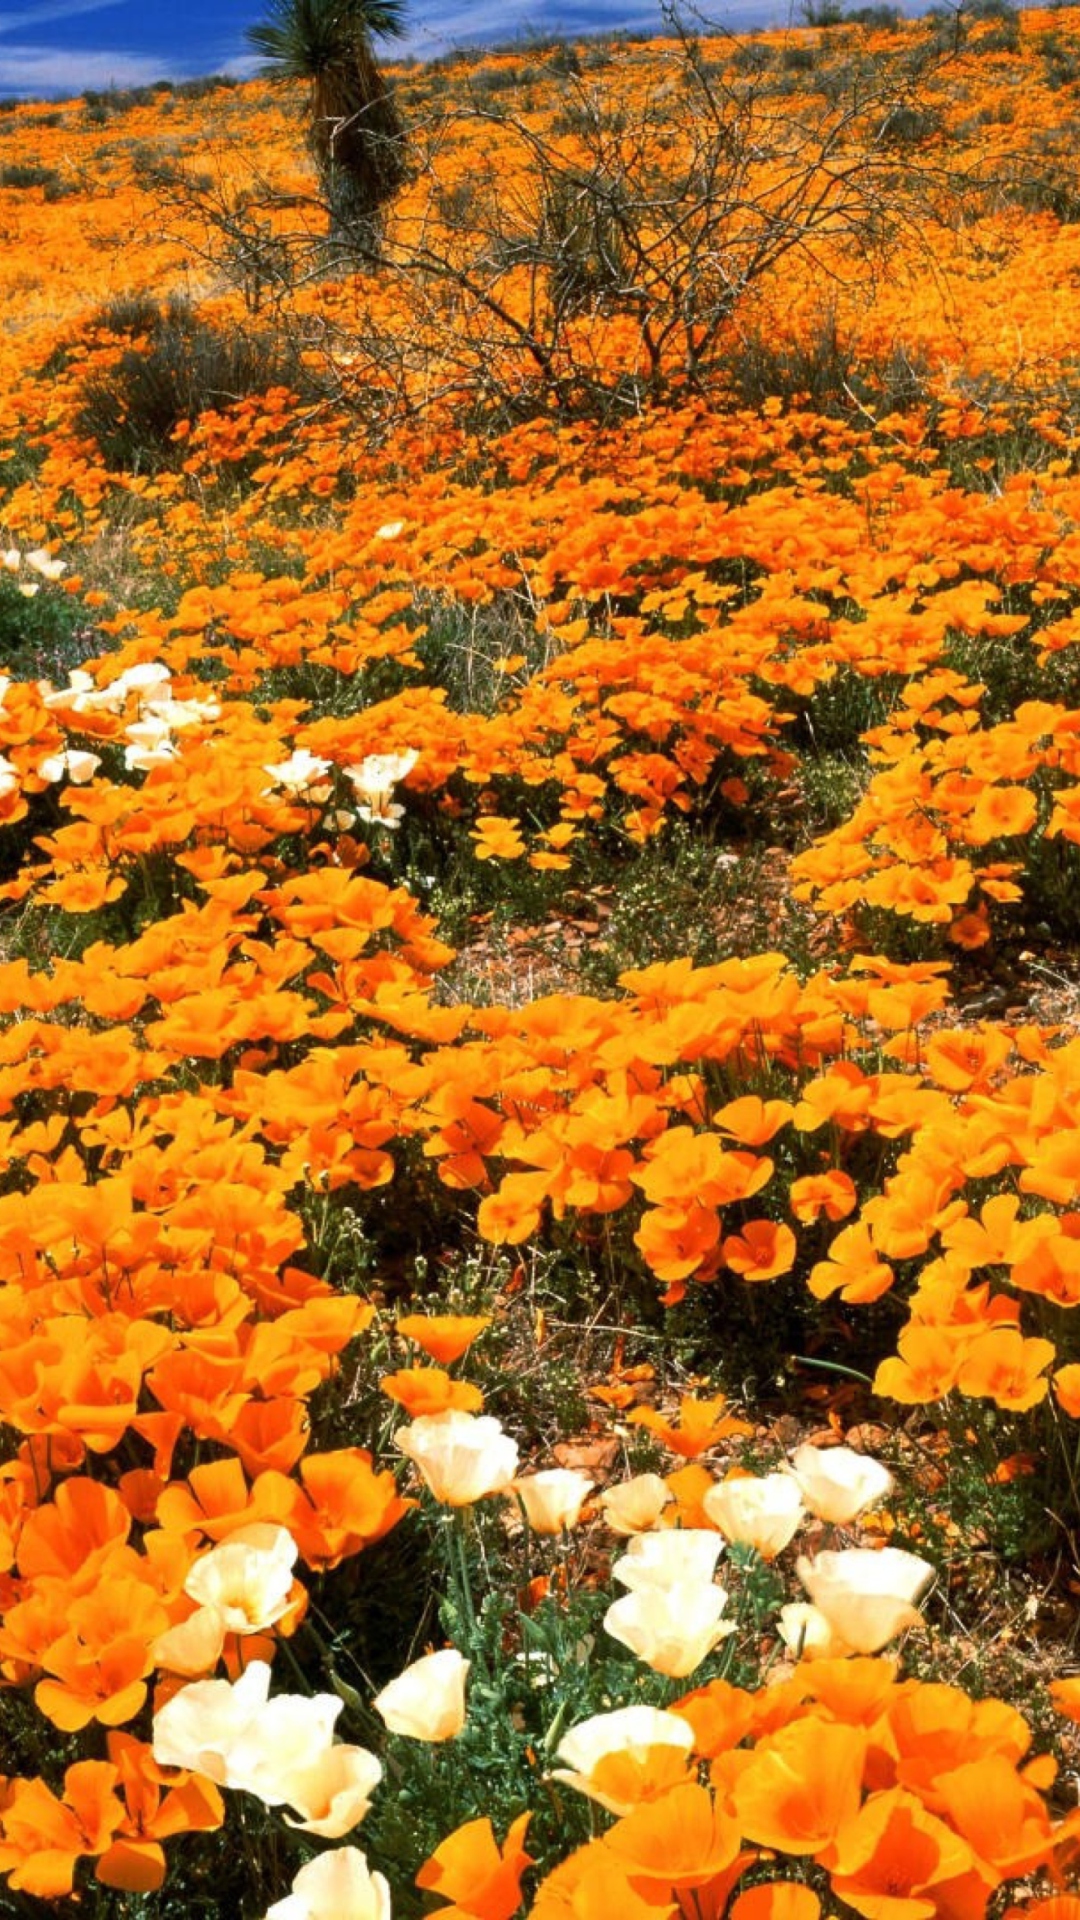 Das Field Of Orange Flowers Wallpaper 1080x1920